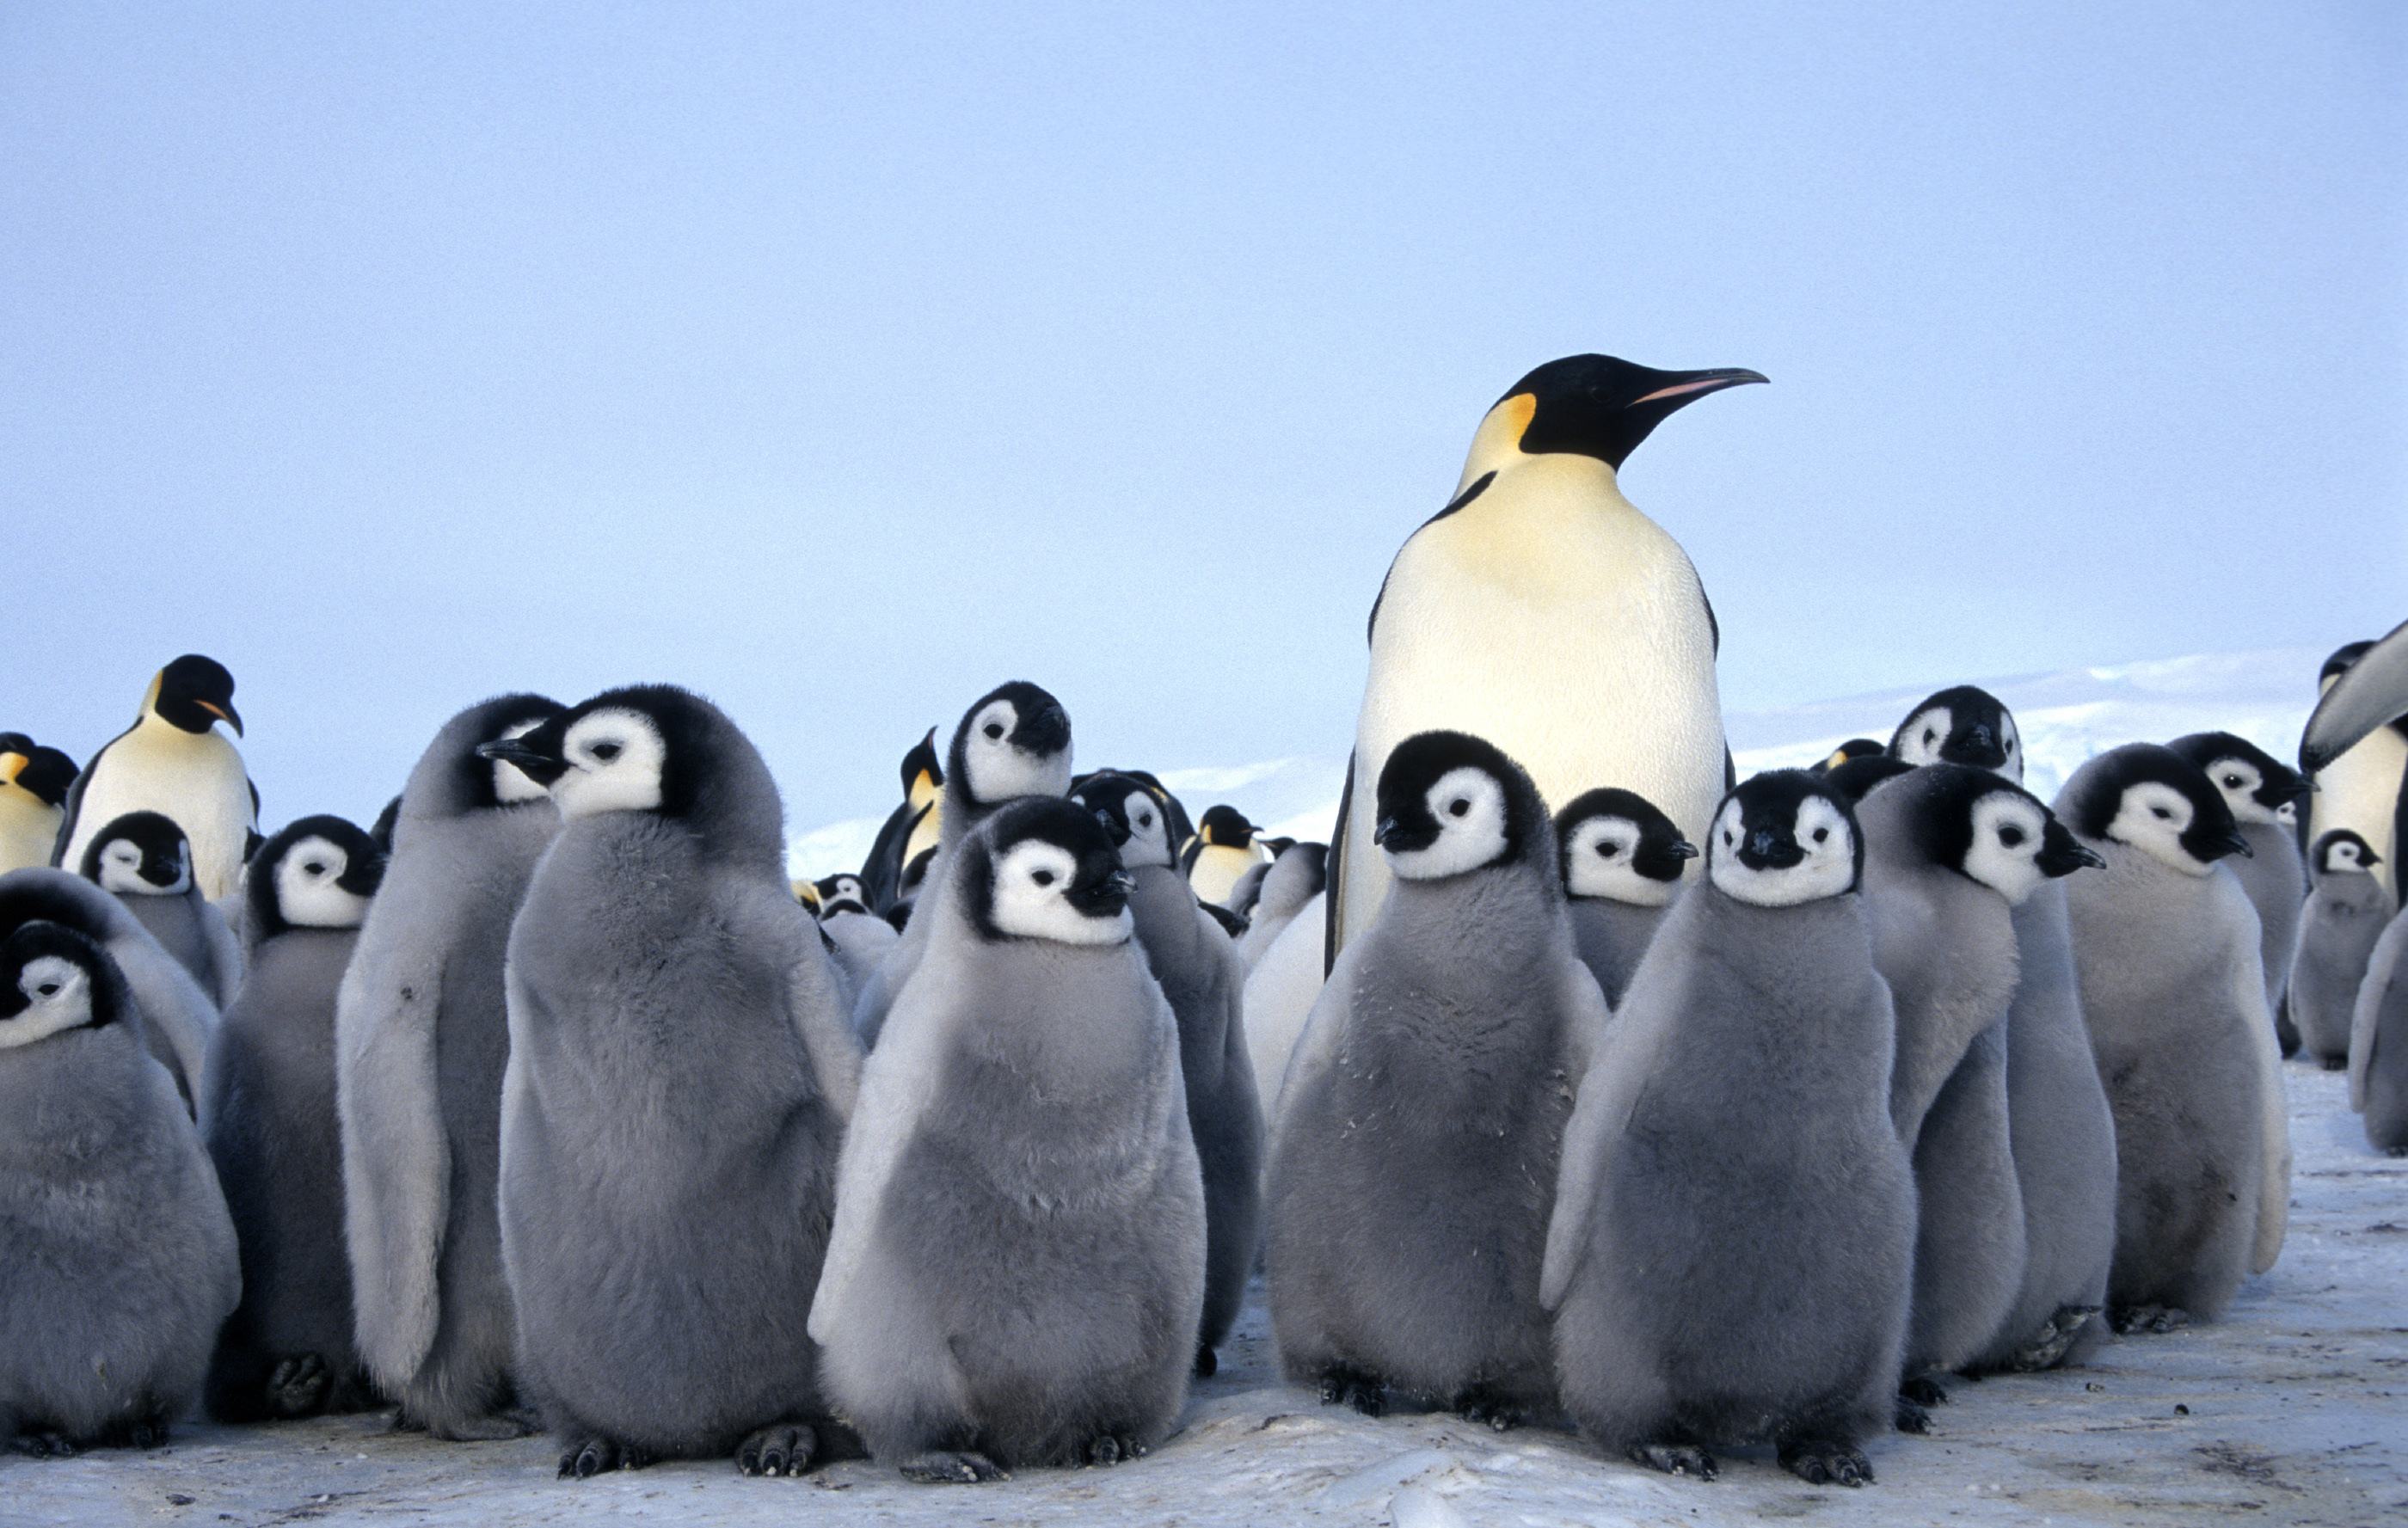 Chim cánh cụt hoàng đế với đàn con của chúng thật dễ thương